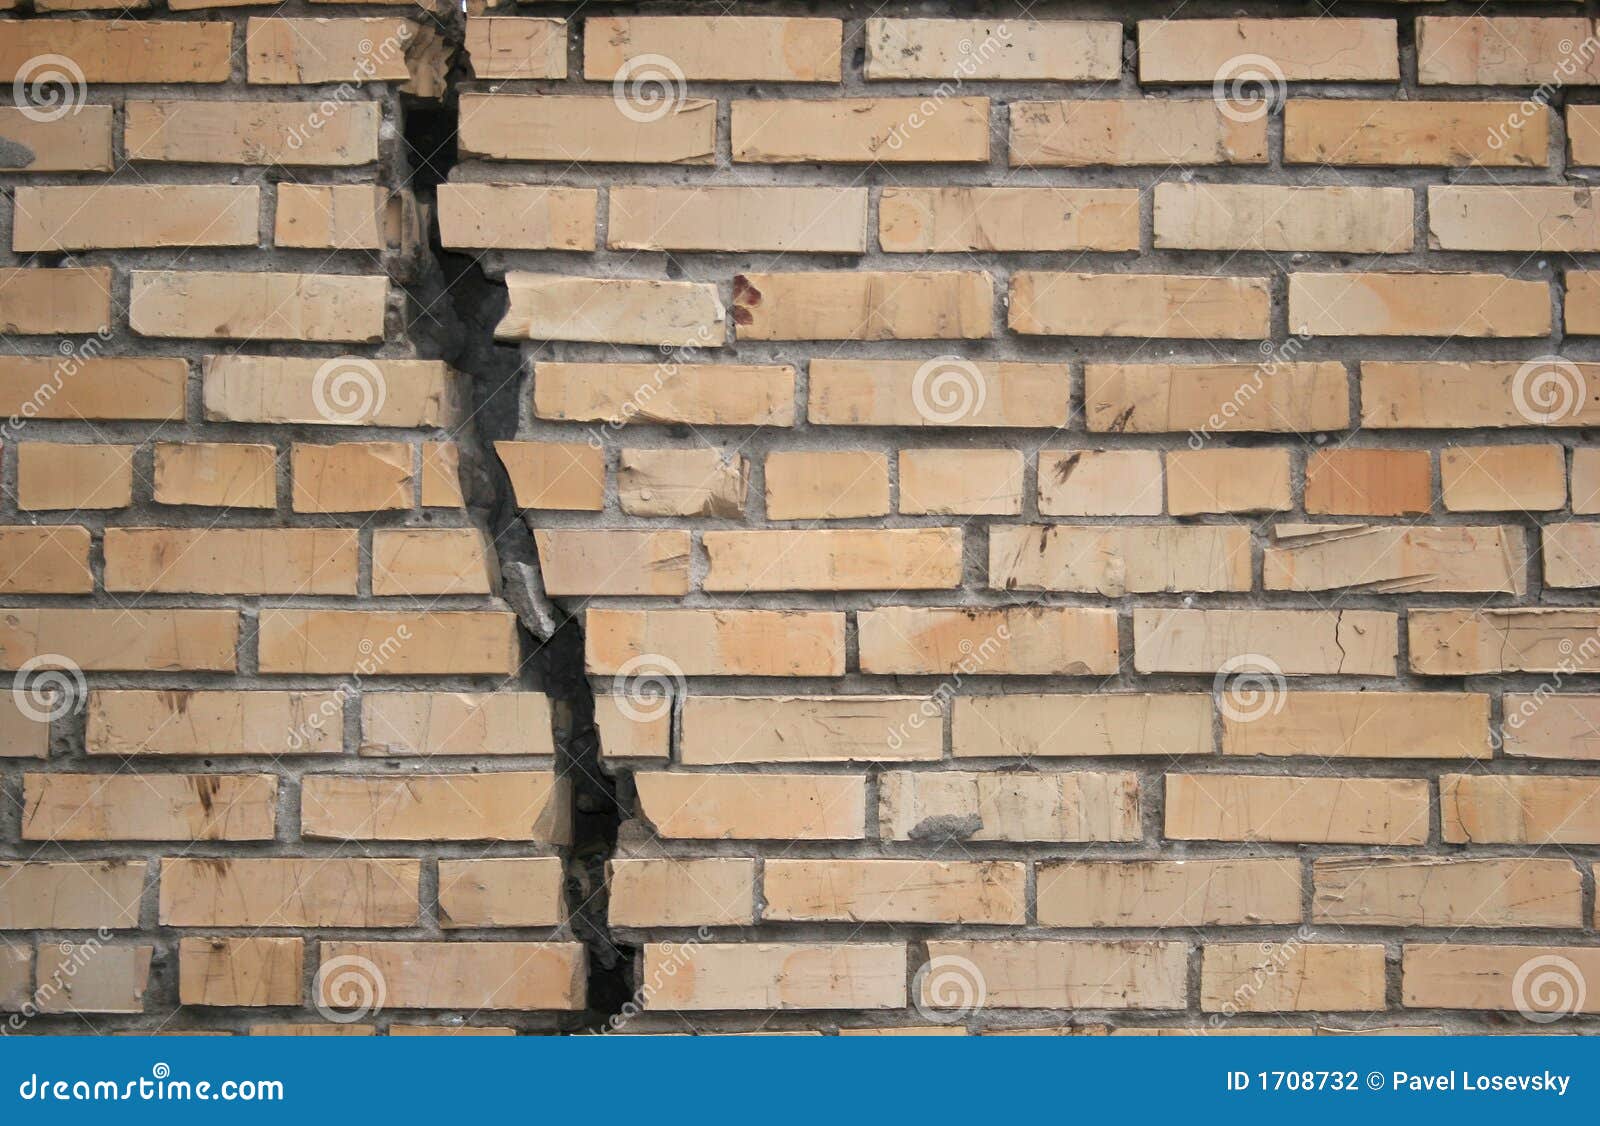 broken-wall-1708732.jpg